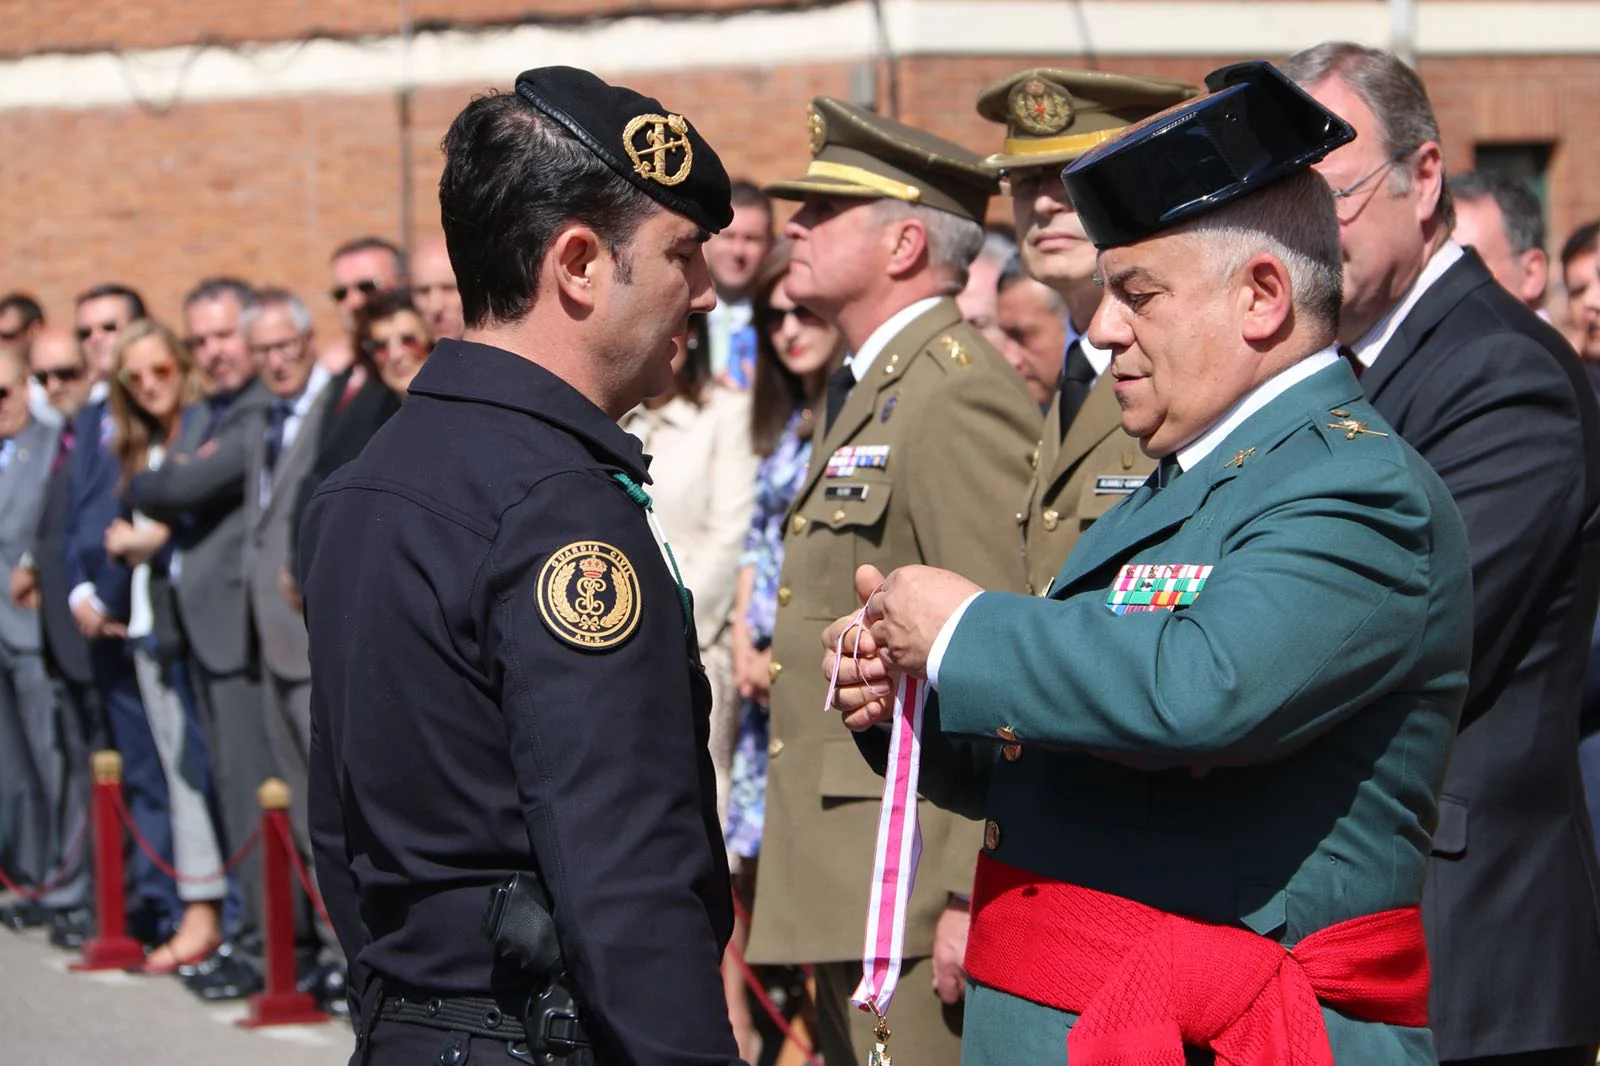 Disciplina, lealtad, compañerismo y servicio son los valores sobre los que nació en 1844 la Guardia Civil, la institución más antigua de España y que este jueves ha conmemorado en León su 174 aniversario